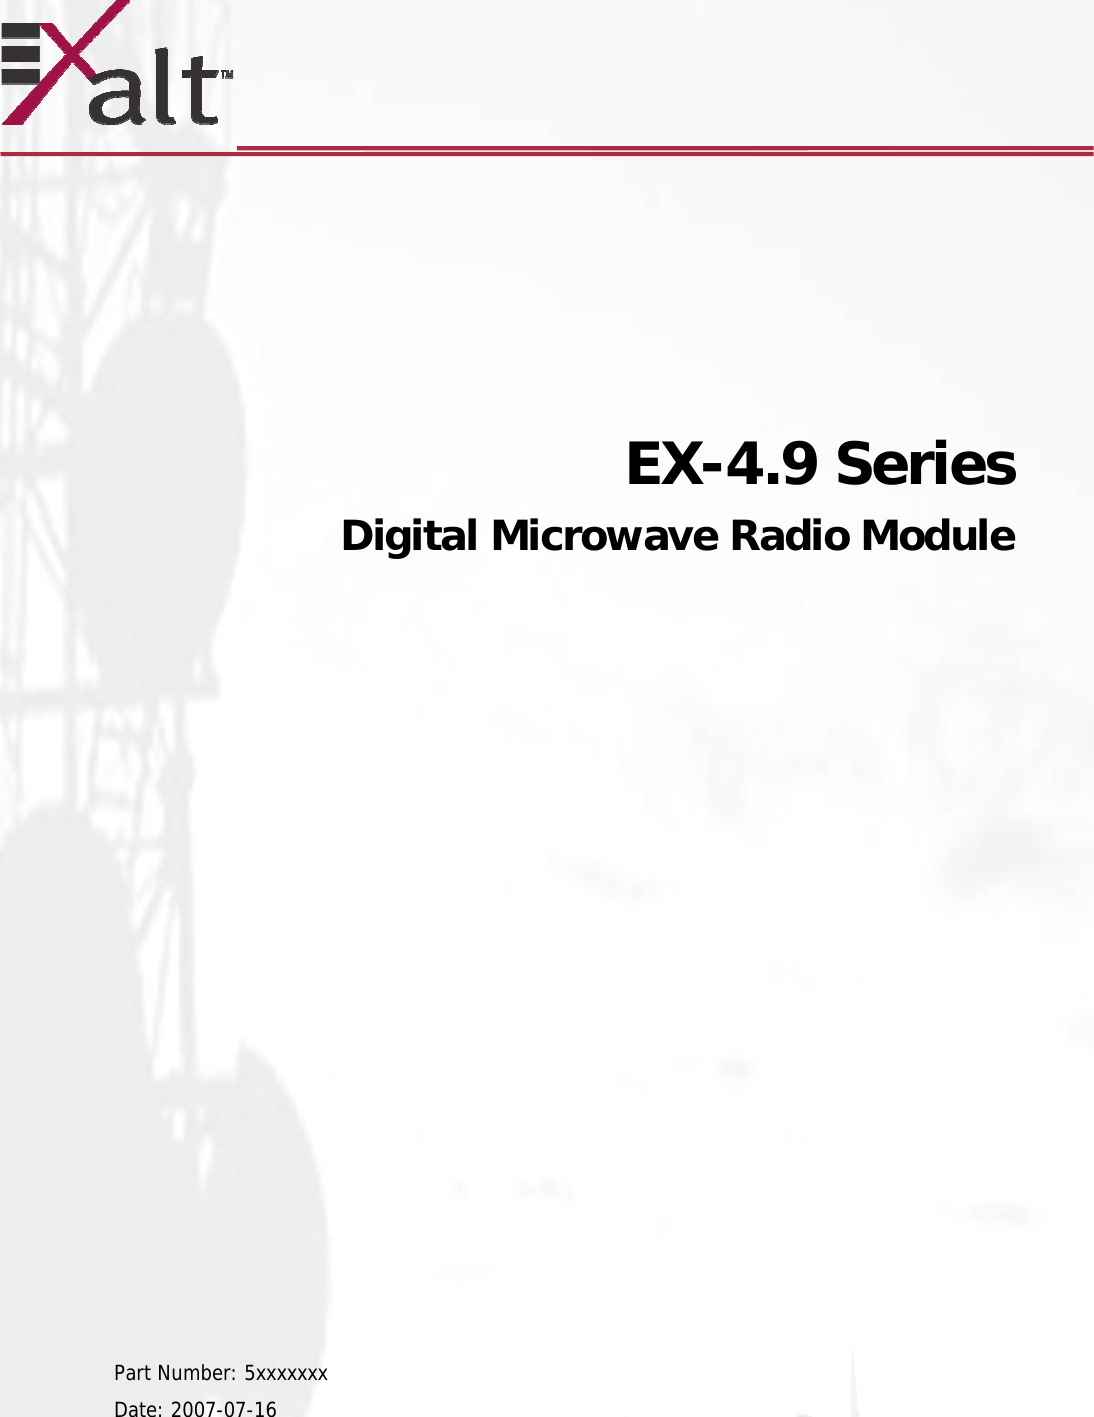            EX-4.9 Series   Digital Microwave Radio Module                     Part Number: 5xxxxxxx Date: 2007-07-16  